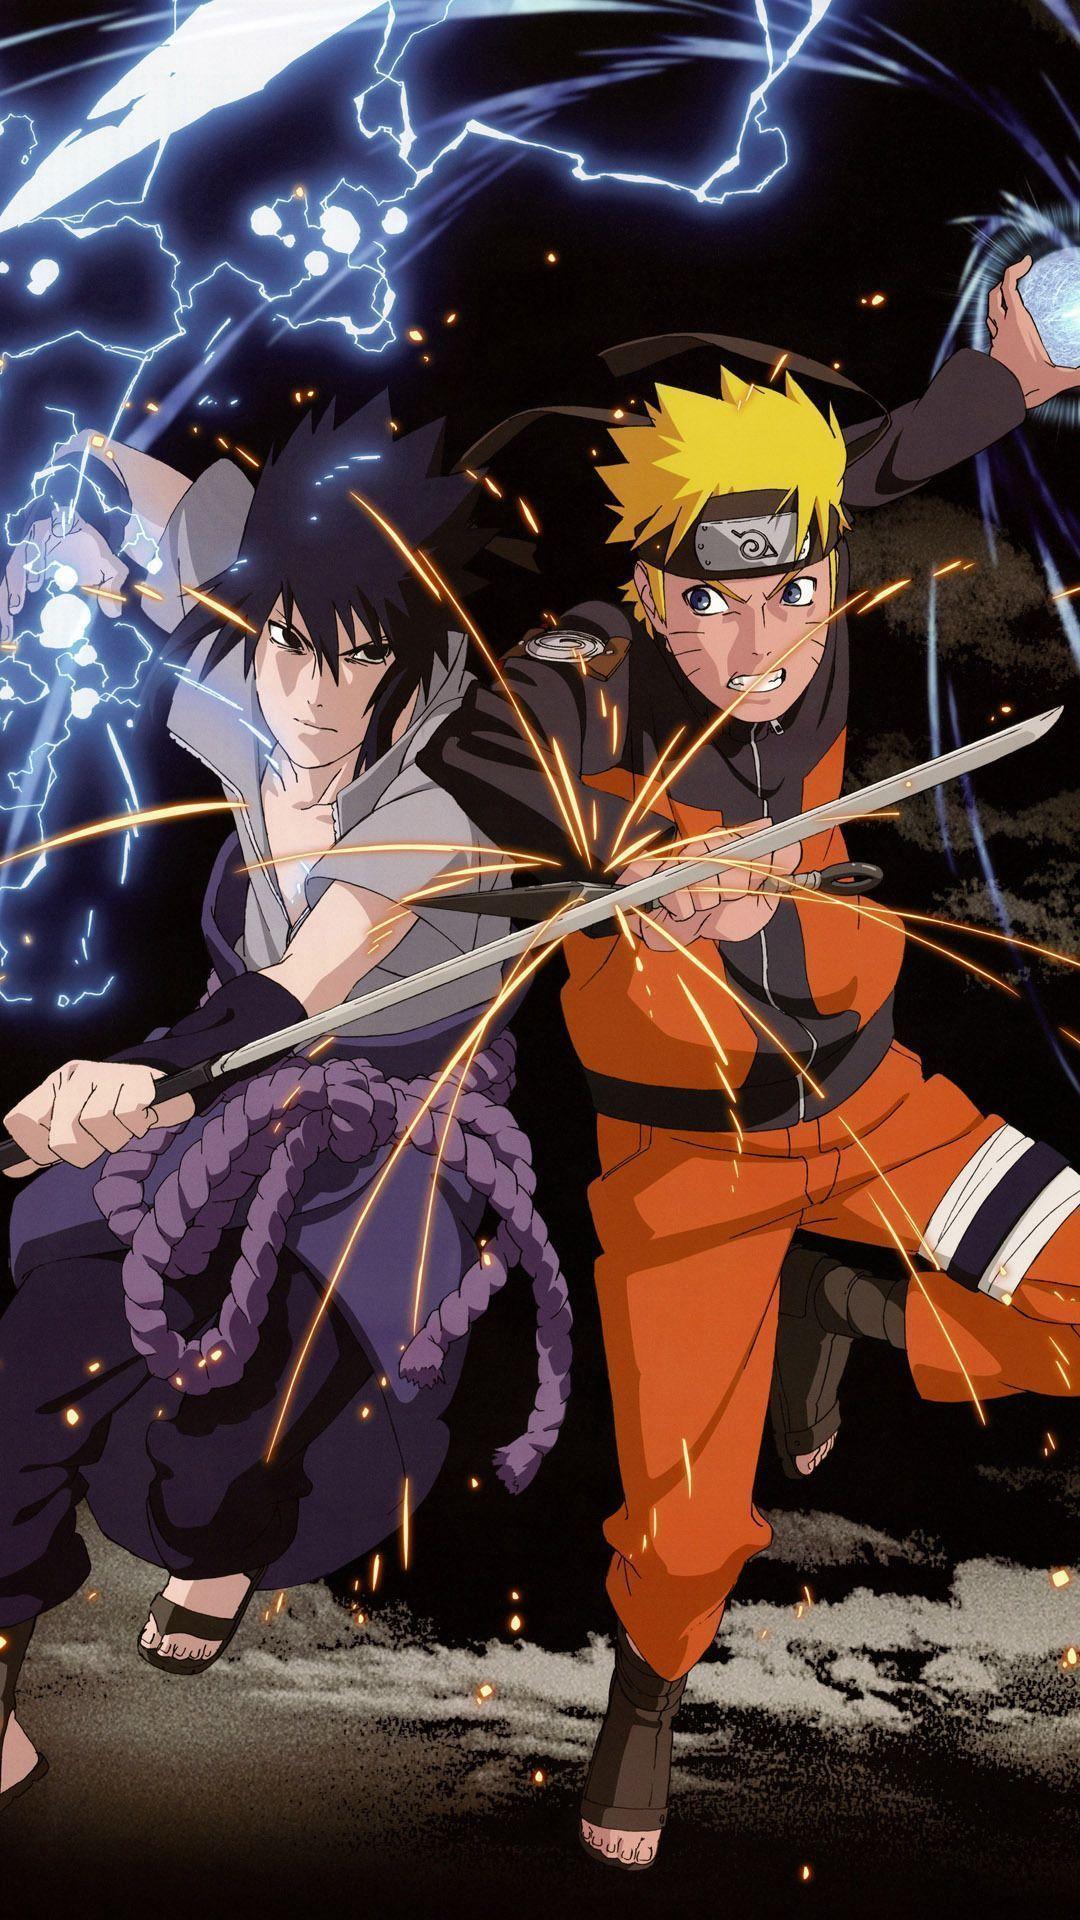 Ảnh nền Naruto và Sasuke đẹp nhất